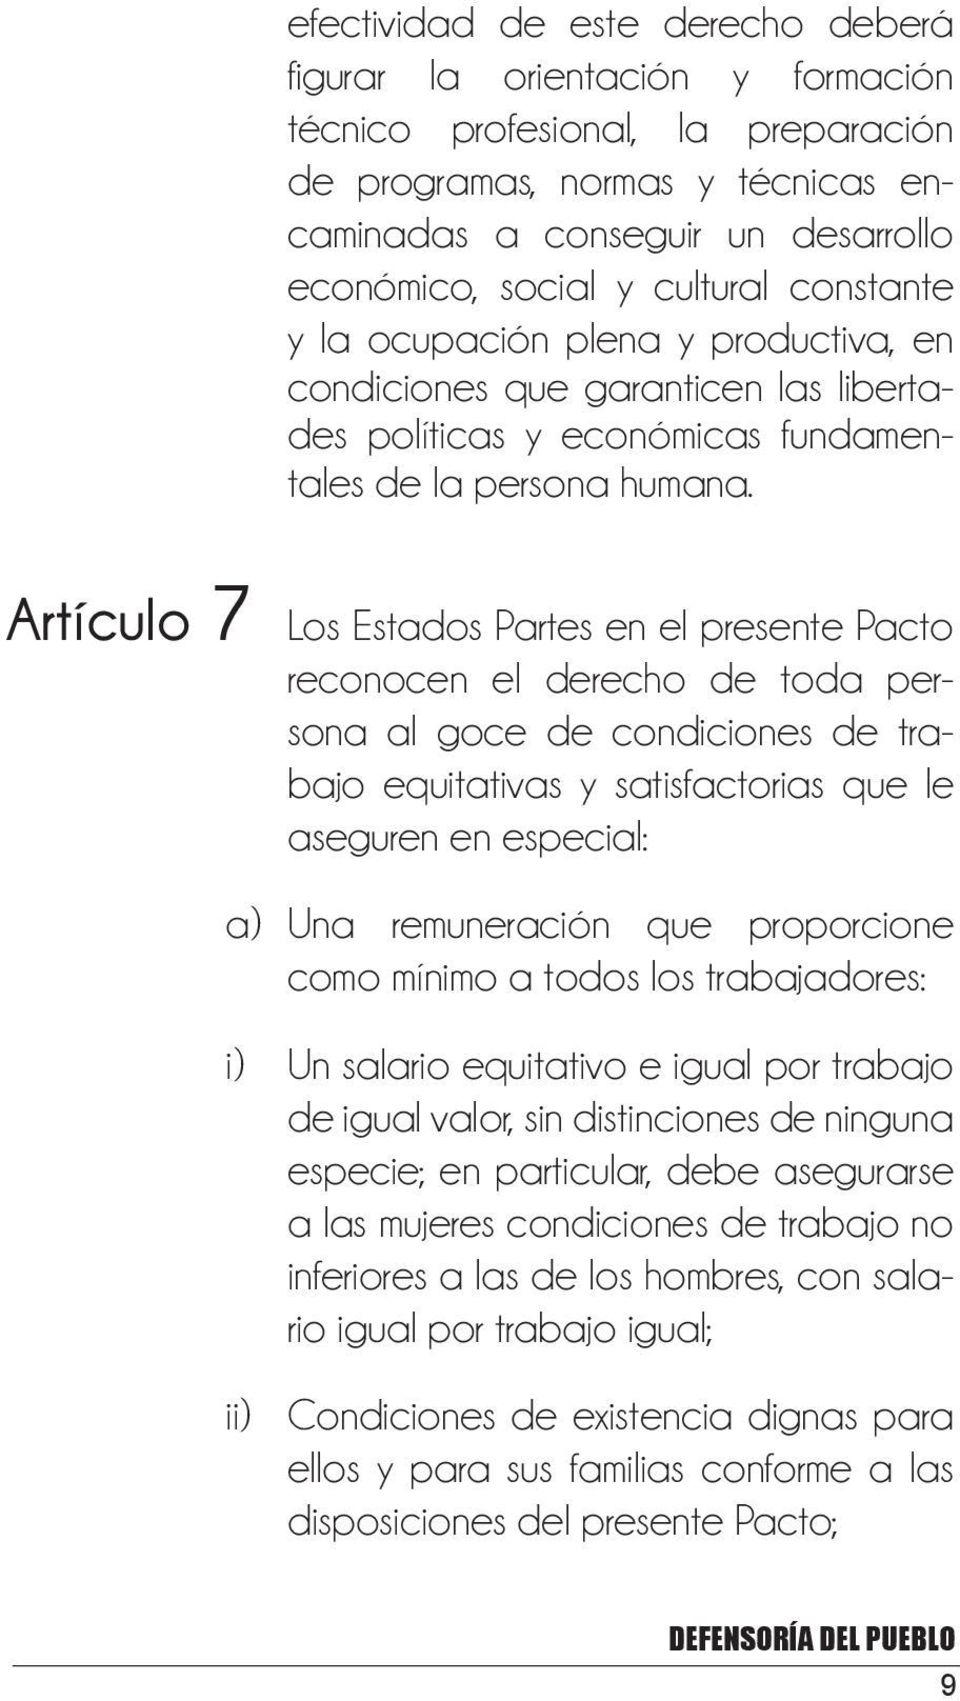 Artículo 7 Los Estados Partes en el presente Pacto reconocen el derecho de toda persona al goce de condiciones de trabajo equitativas y satisfactorias que le aseguren en especial: a) Una remuneración